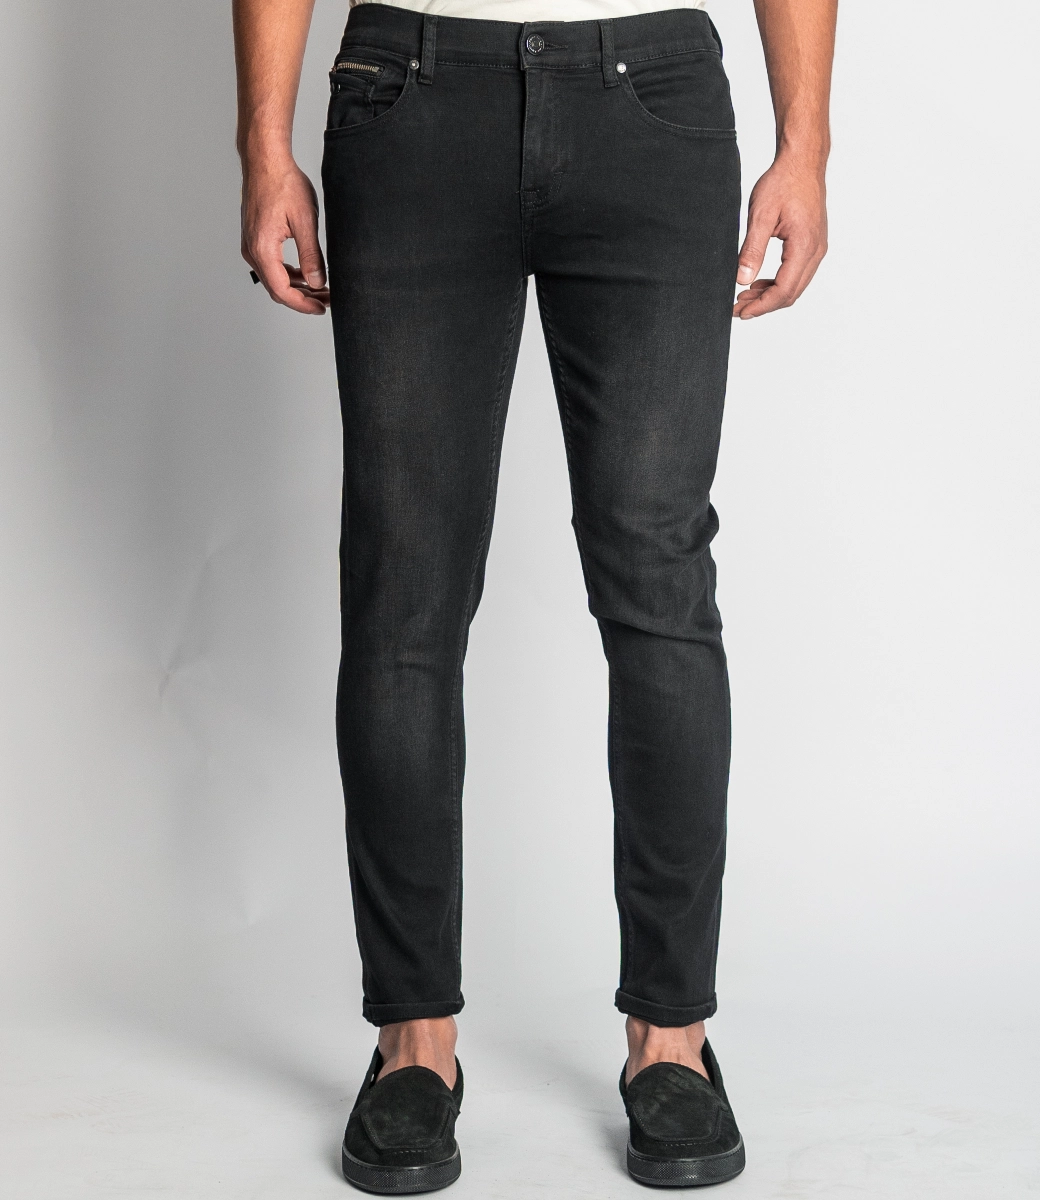 RYAN Black - Slim Fit Jeans